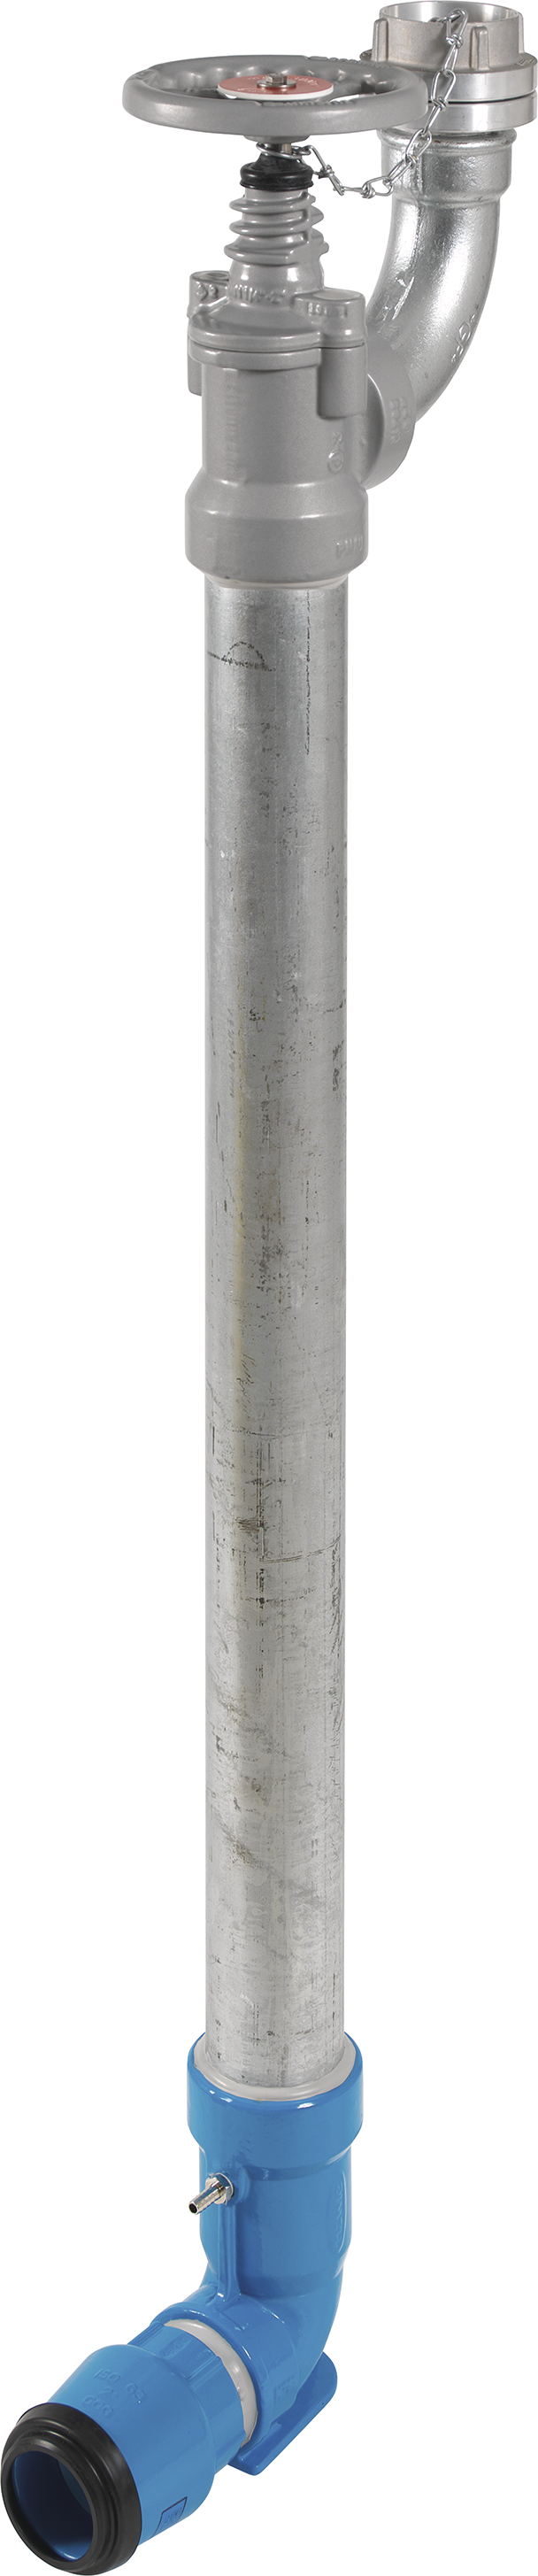 Bewässerungshydrant Unterflur N767 d 63mm, L = 300mm - Hawle Hydranten